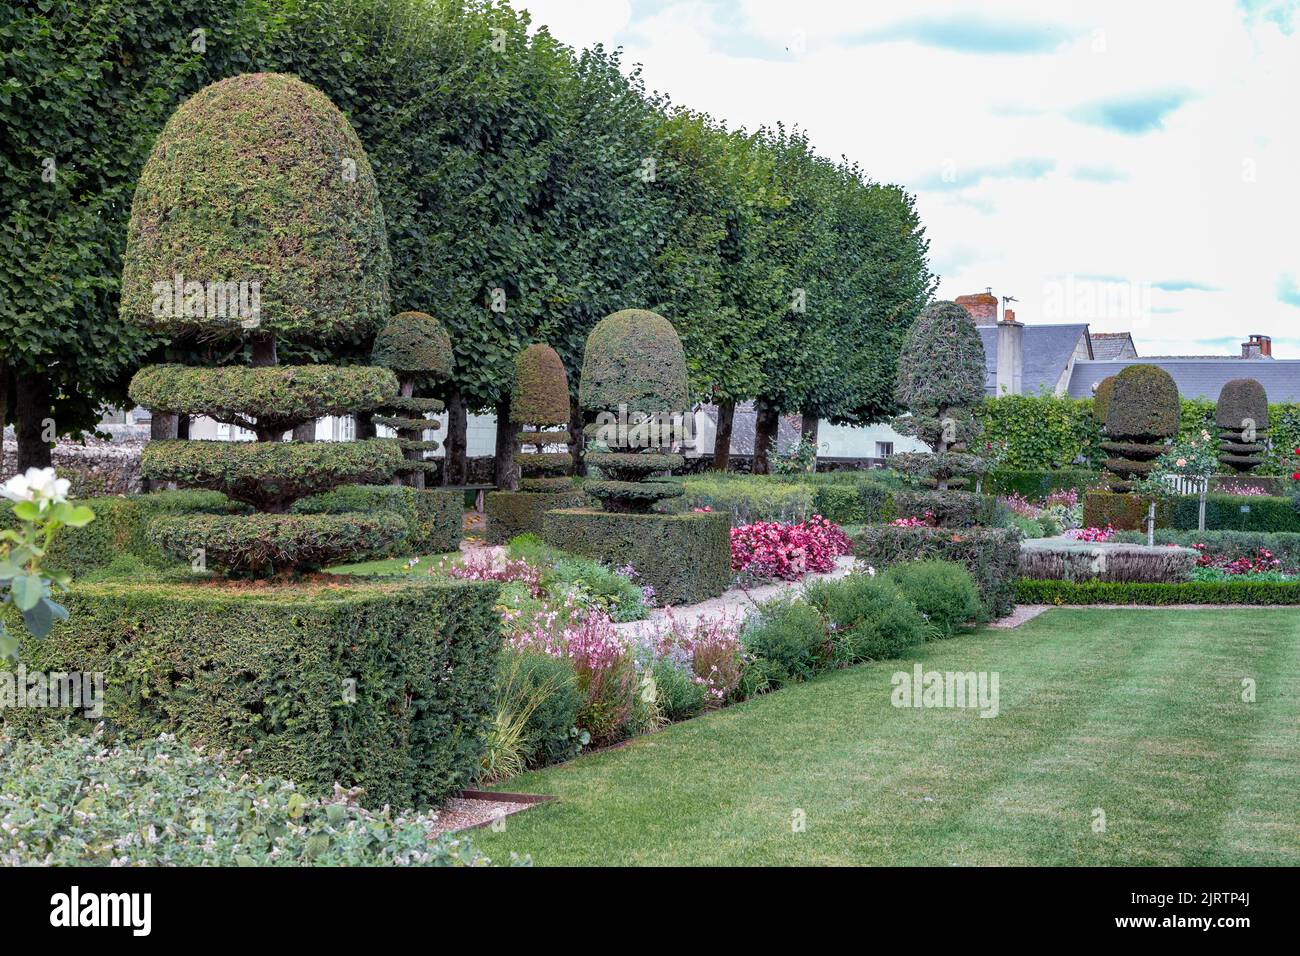 VILLANDRY, FRANKREICH - 7. SEPTEMBER 2019: Dies ist eine Wiese des Apothekergartens des Schlosses Villandry im Loire-Tal. Stockfoto